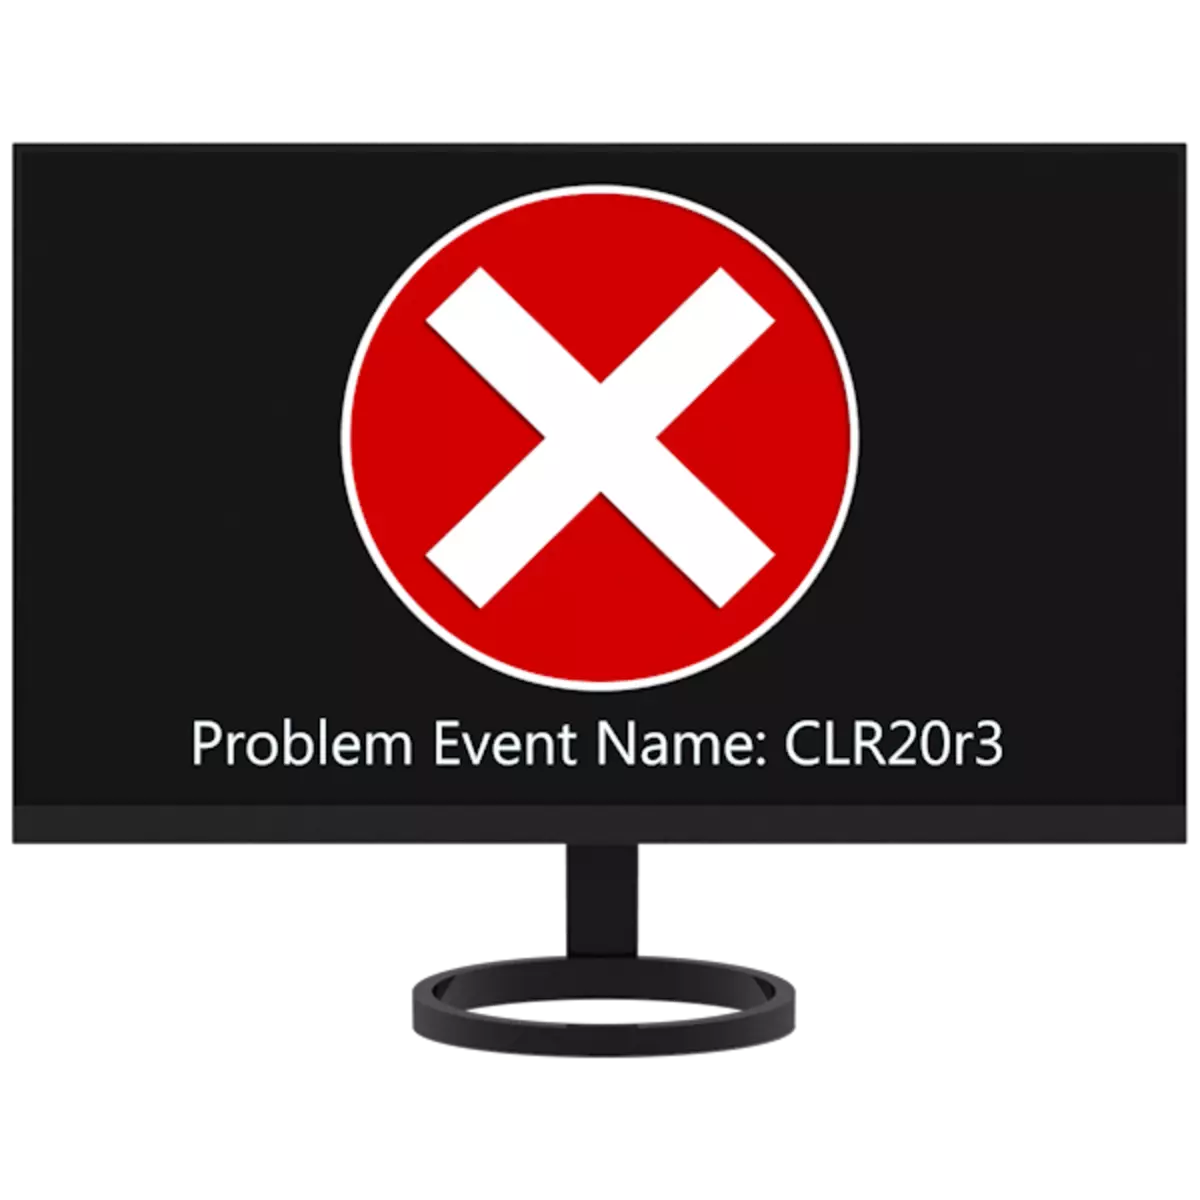 Nola konpondu CLR20R3 errorea Windows 7-n